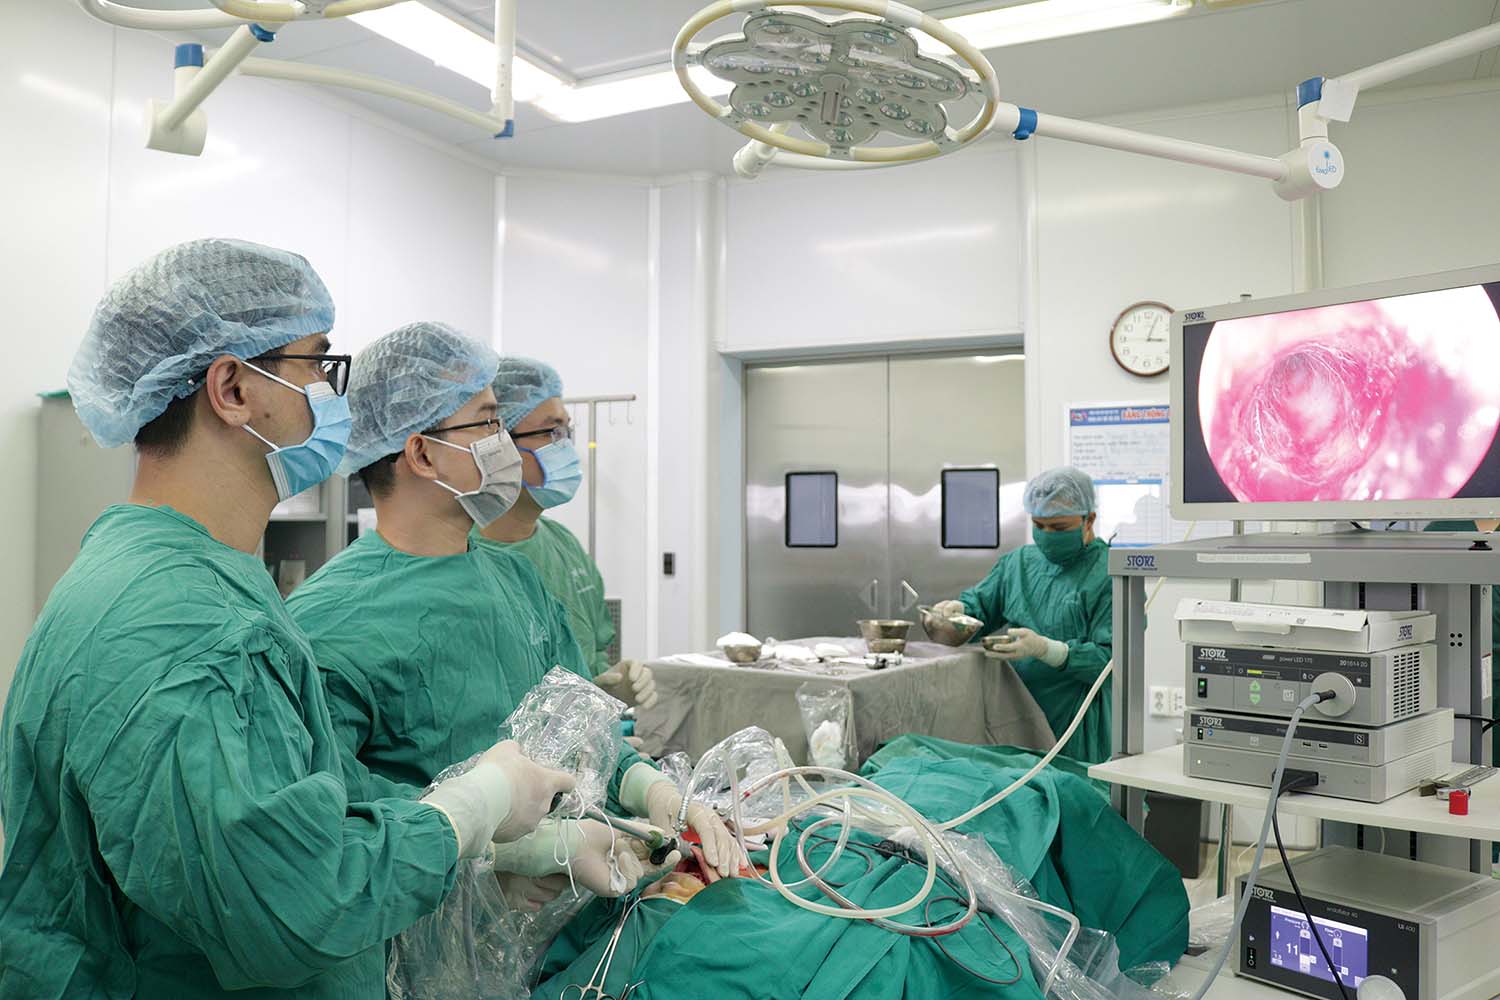 Trang thiết bị hiện đại dùng cho khám chữa bệnh tại Bệnh viện Hữu nghị Việt Tiệp